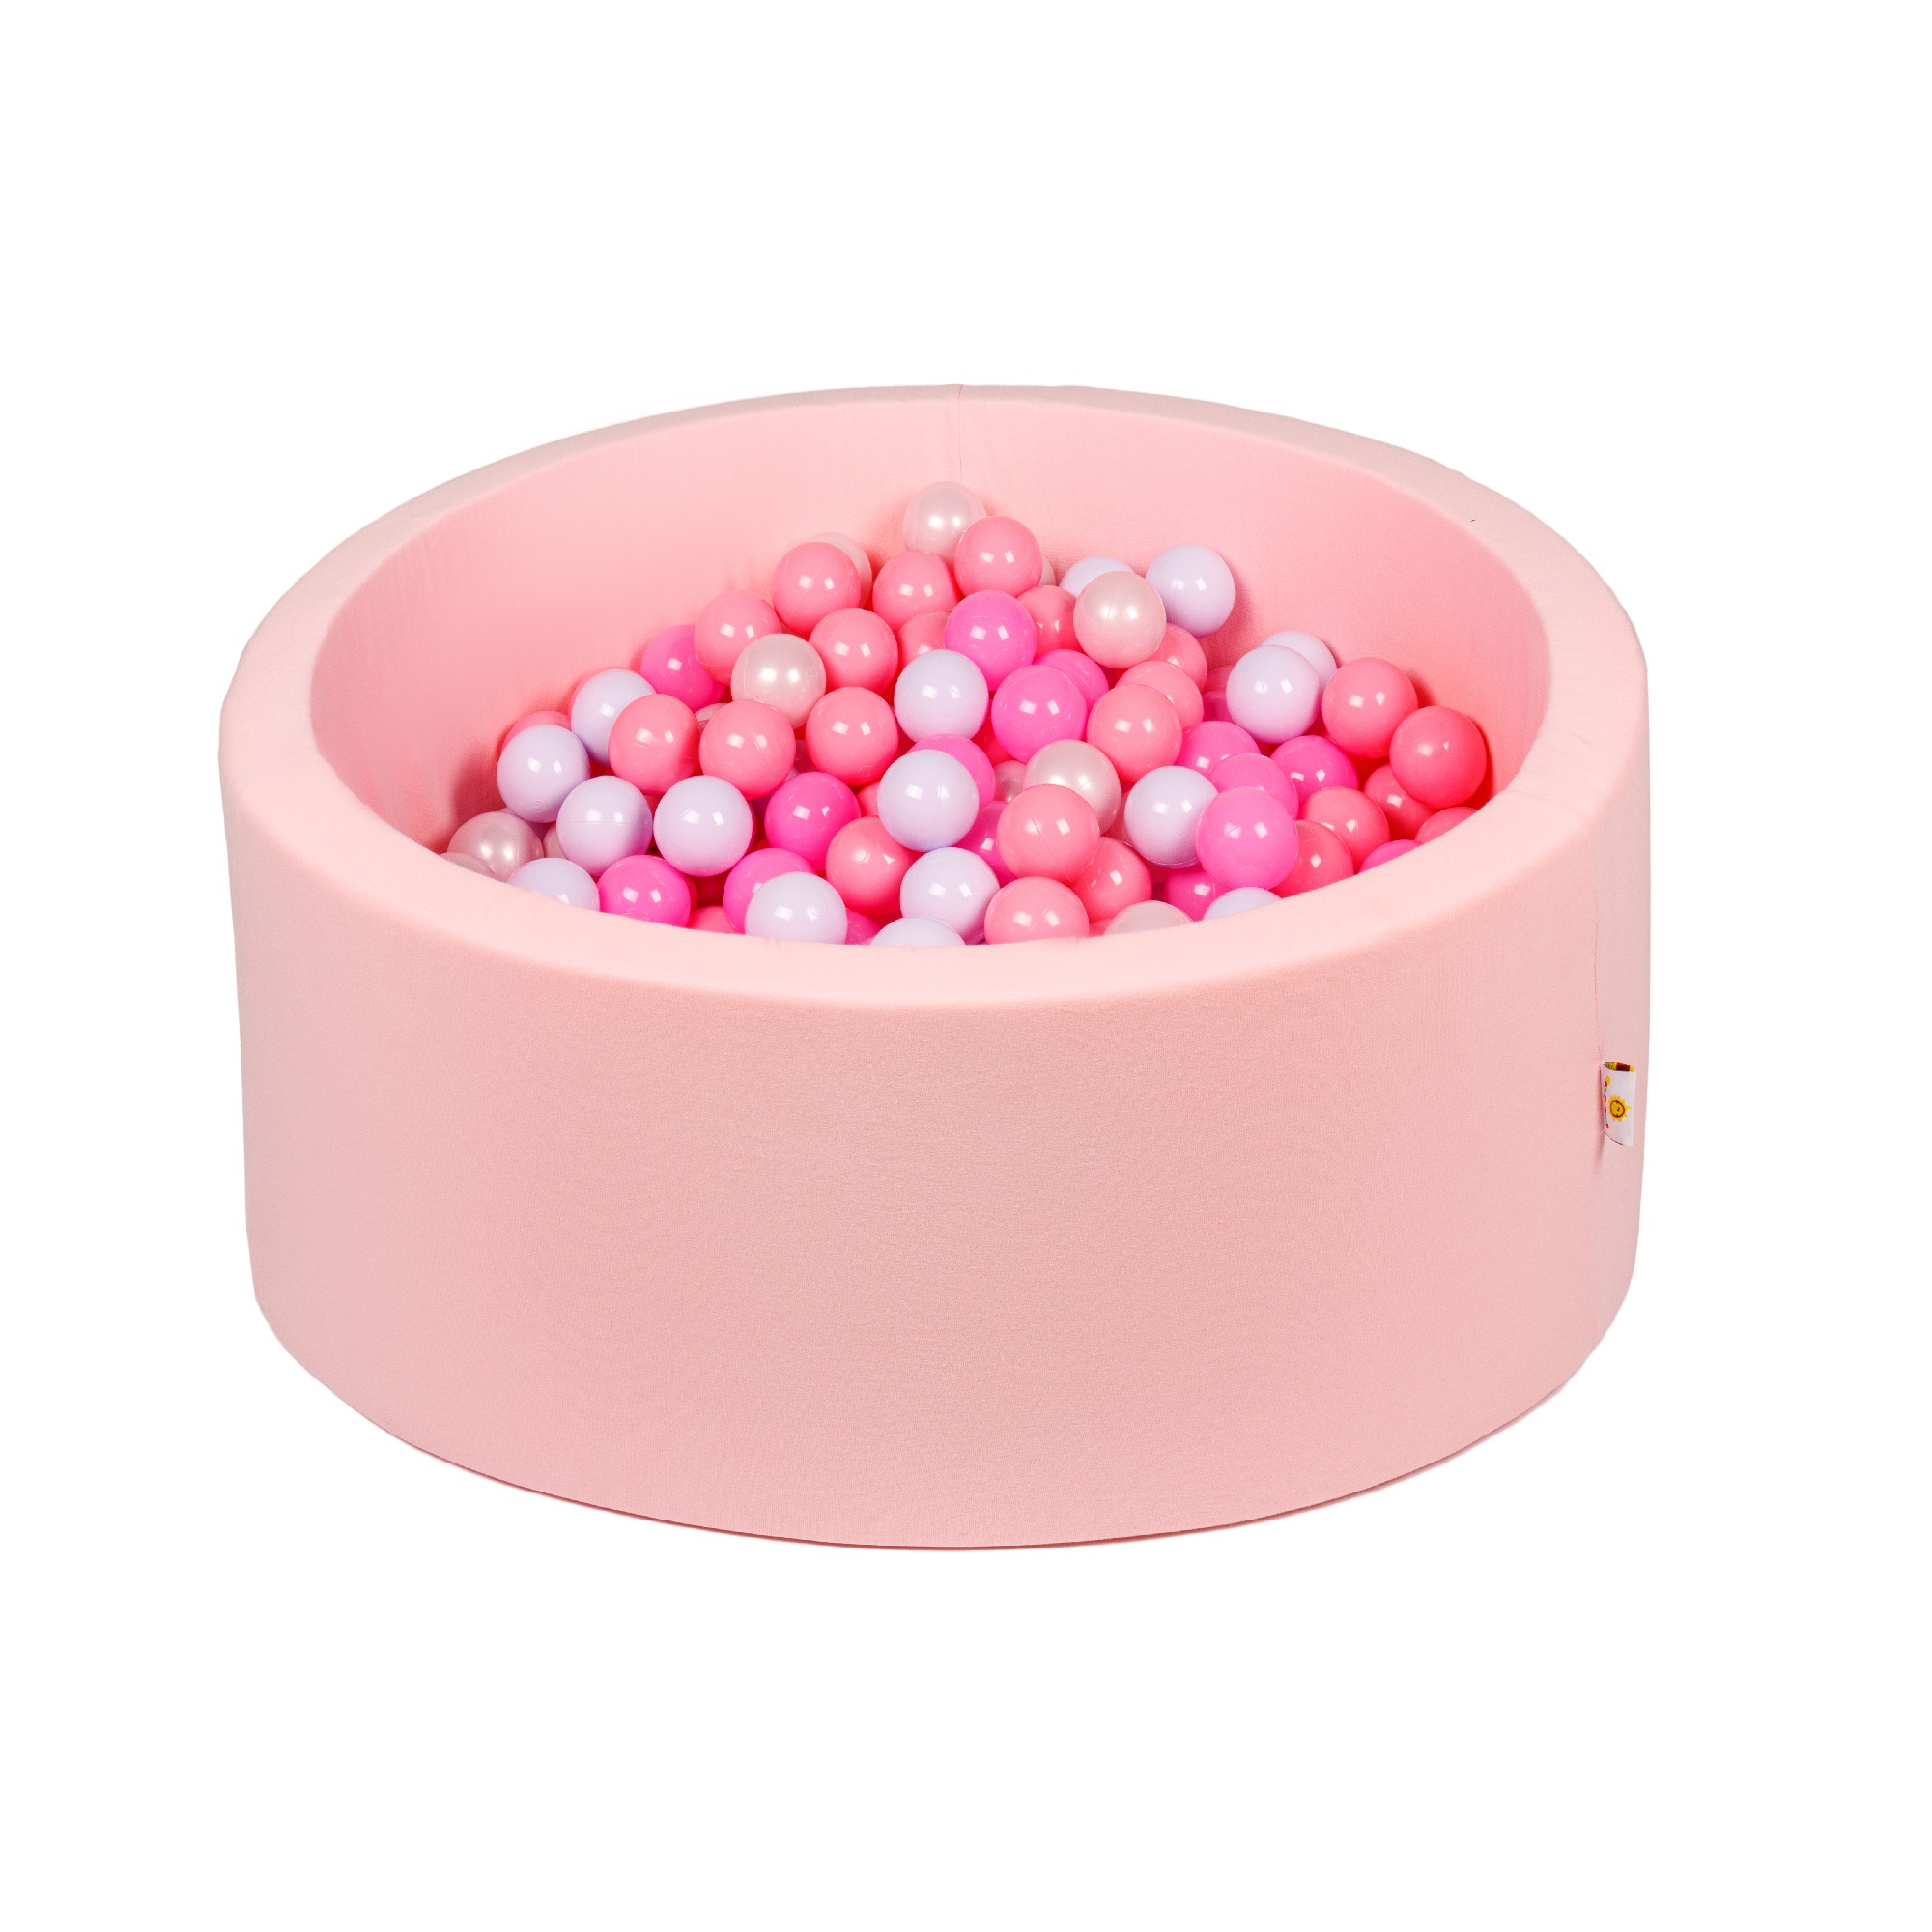 Сухой бассейн 85х30 Пазитифчик розовый + 200 шариков - фото 1